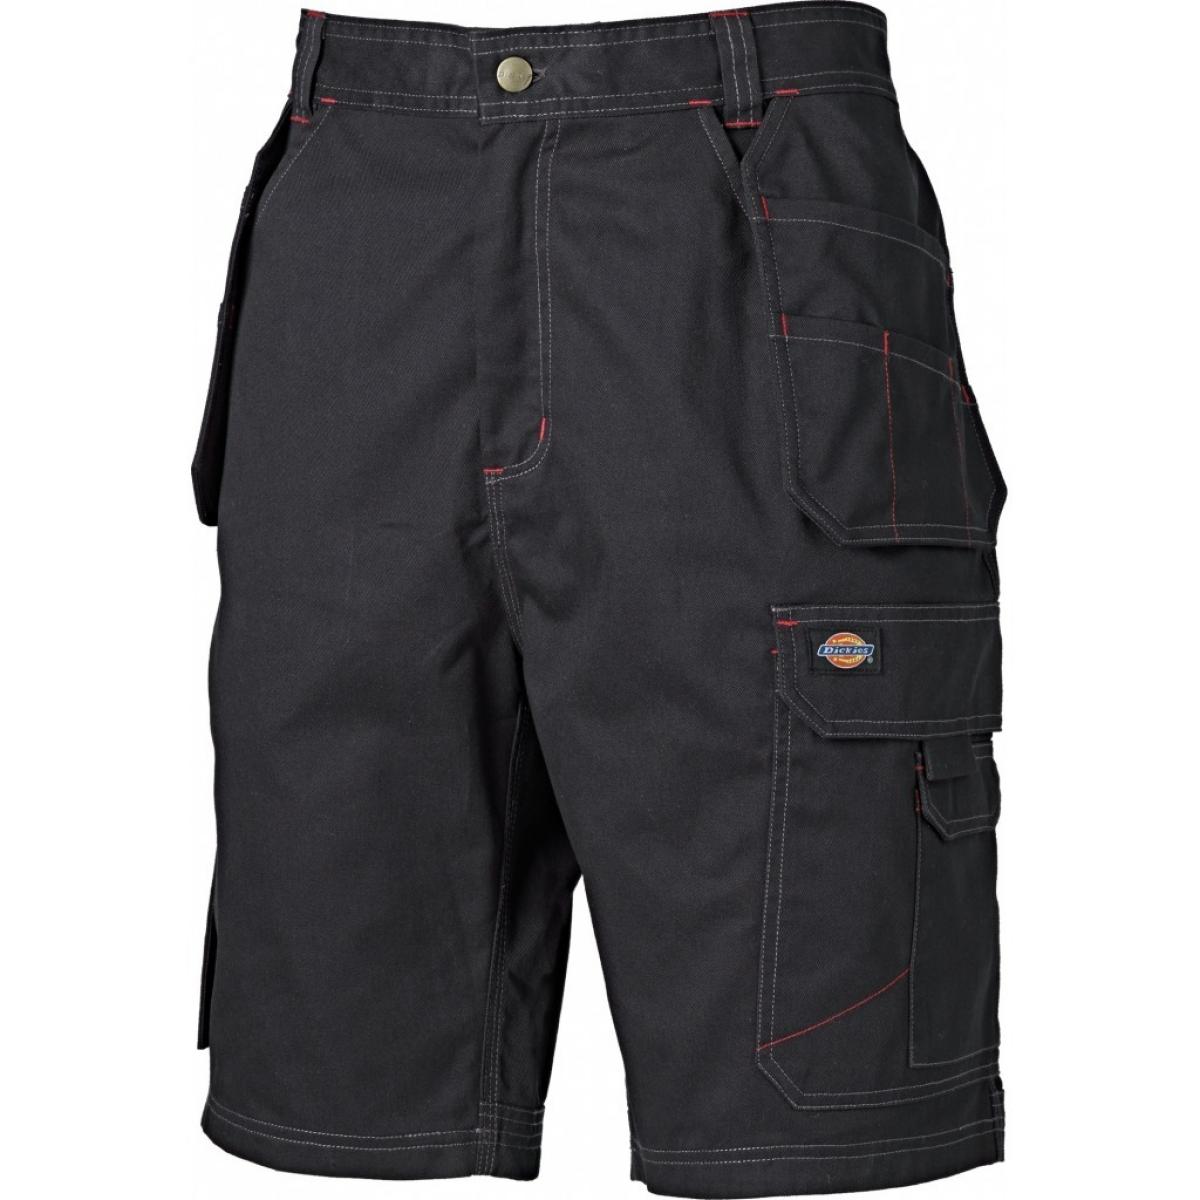 Hersteller: Dickies Herstellernummer: WD802 Artikelbezeichnung: Redhawk Pro Shorts - Arbeitsshorts Farbe: Schwarz